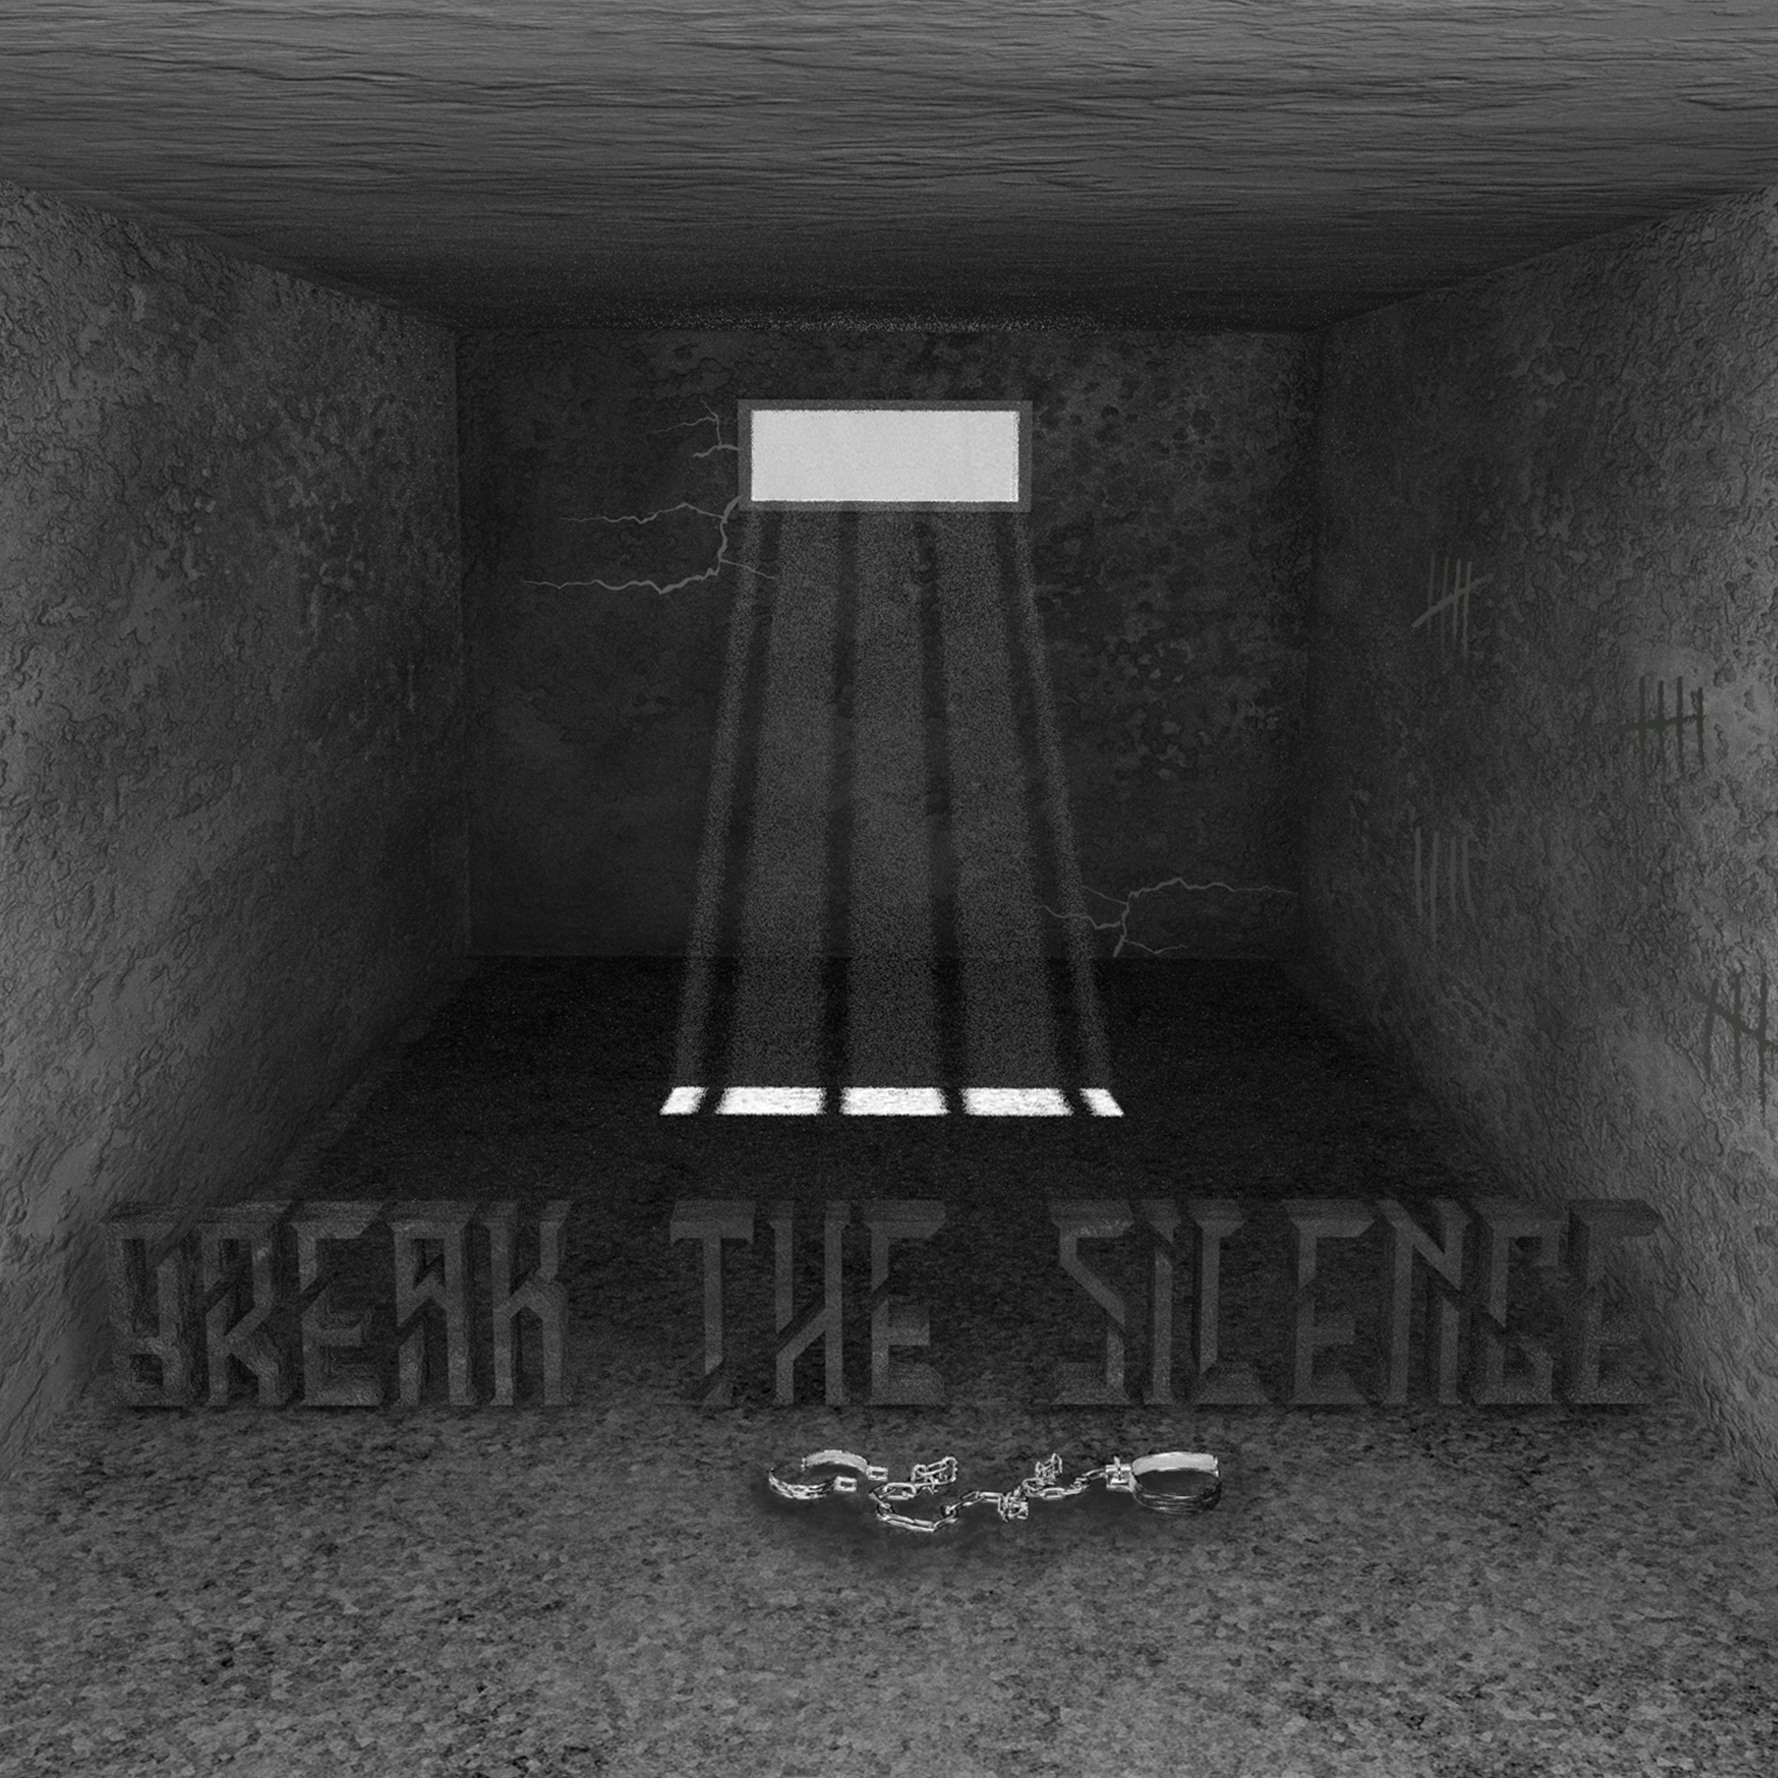 Grandi novità per i Dust: dalla pubblicazione del disco d’esordio “Break The Silence” all’uscita dell’omonimo video!